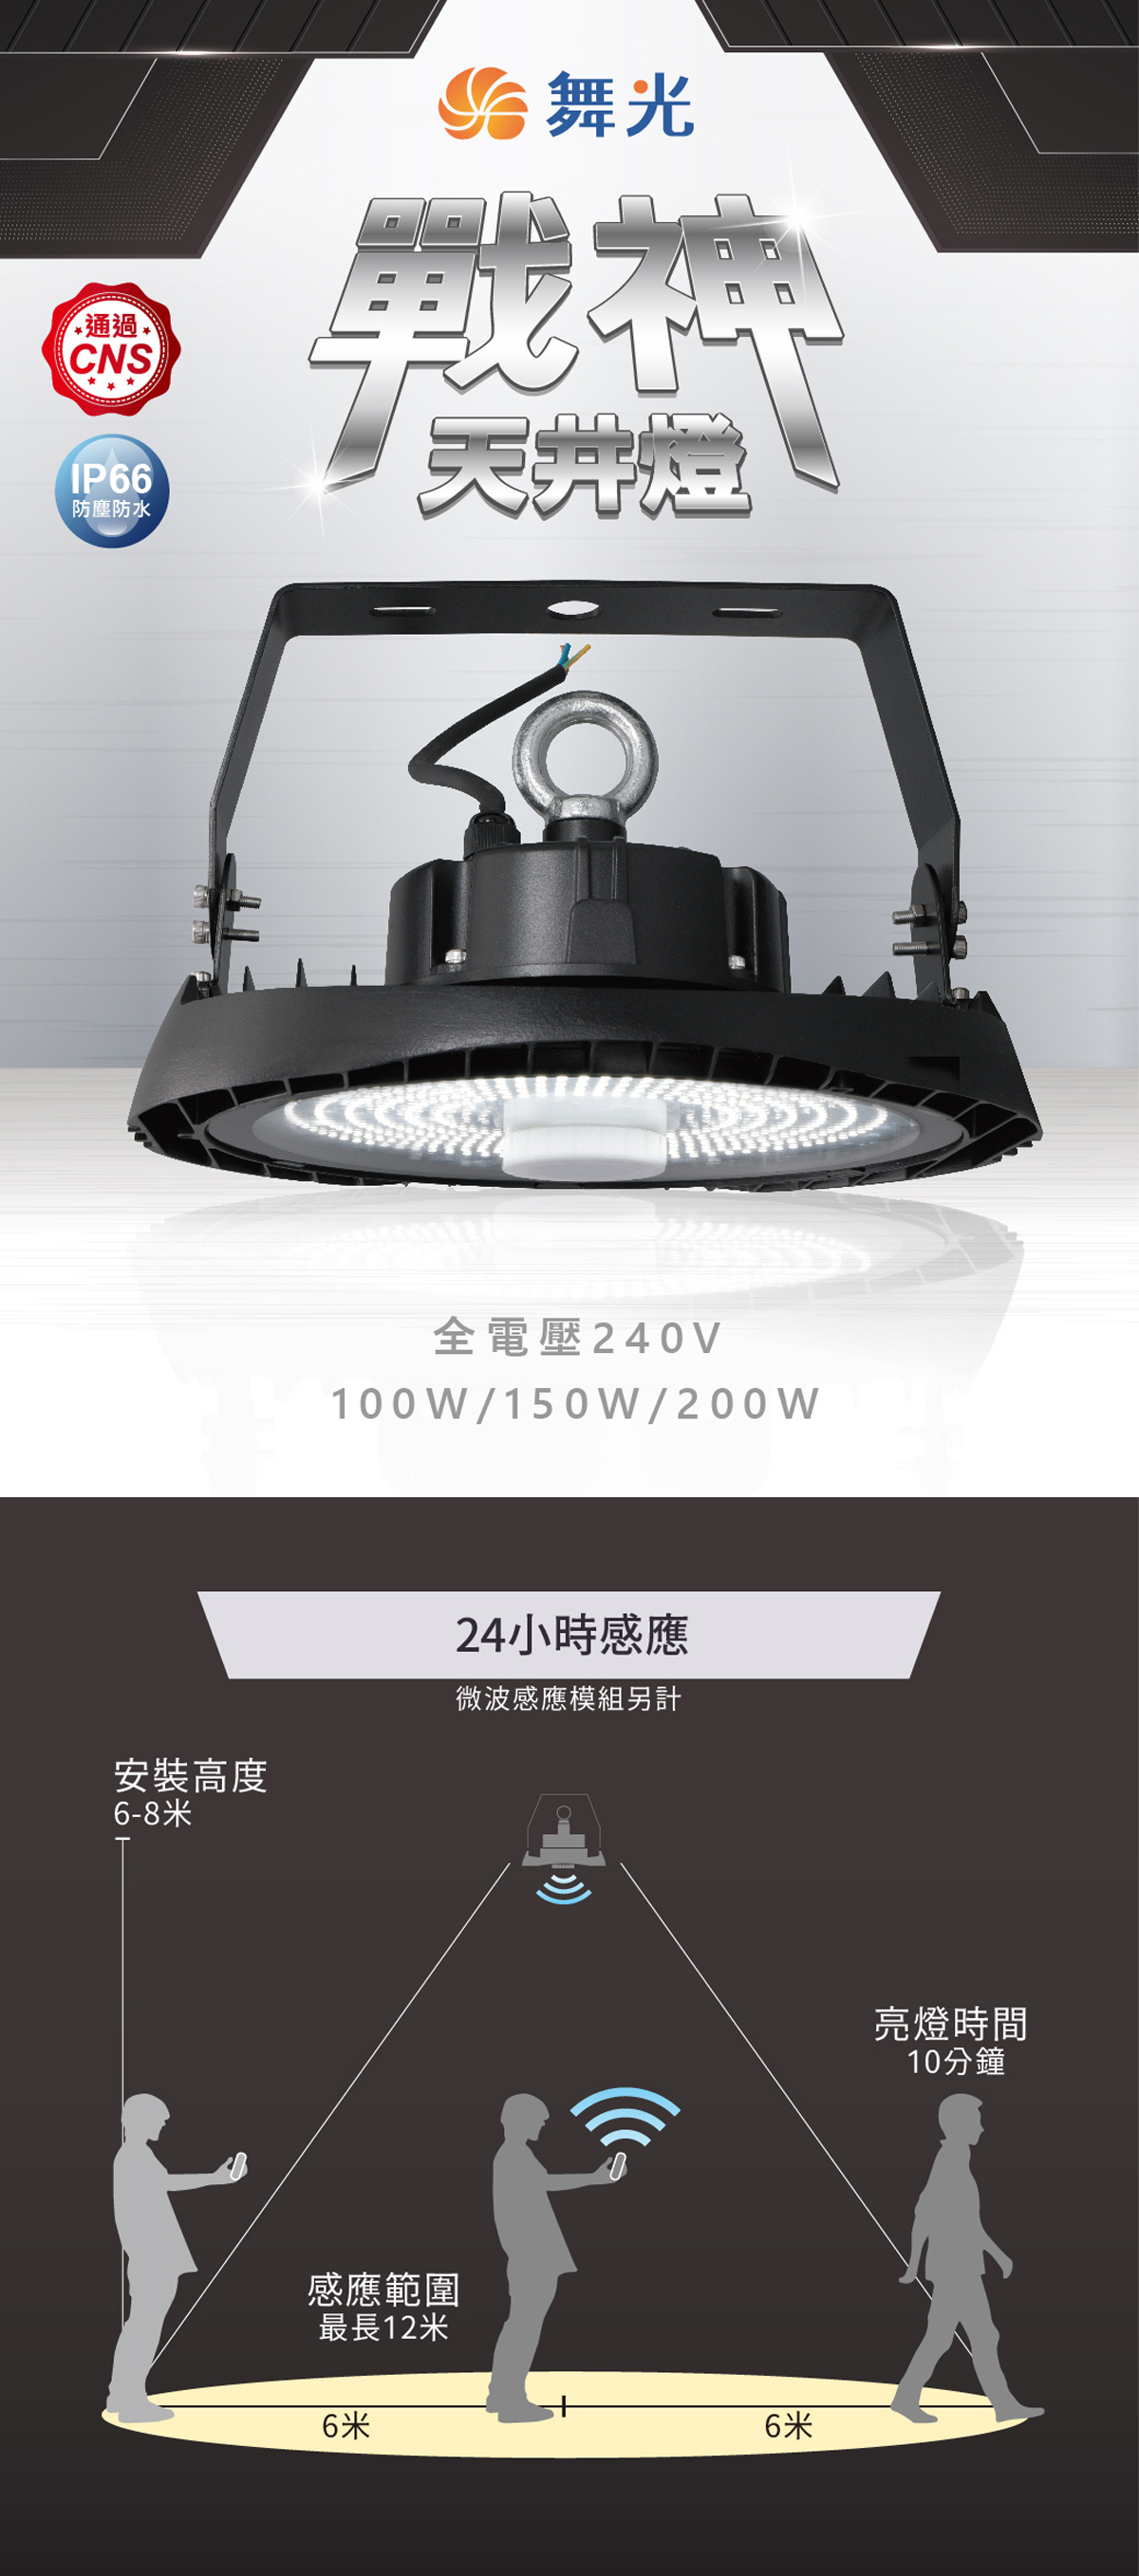 【舞光】LED 宇宙天井燈 100W 150W 200w  IP66防水防塵 全電壓 可以加裝微波感應模組